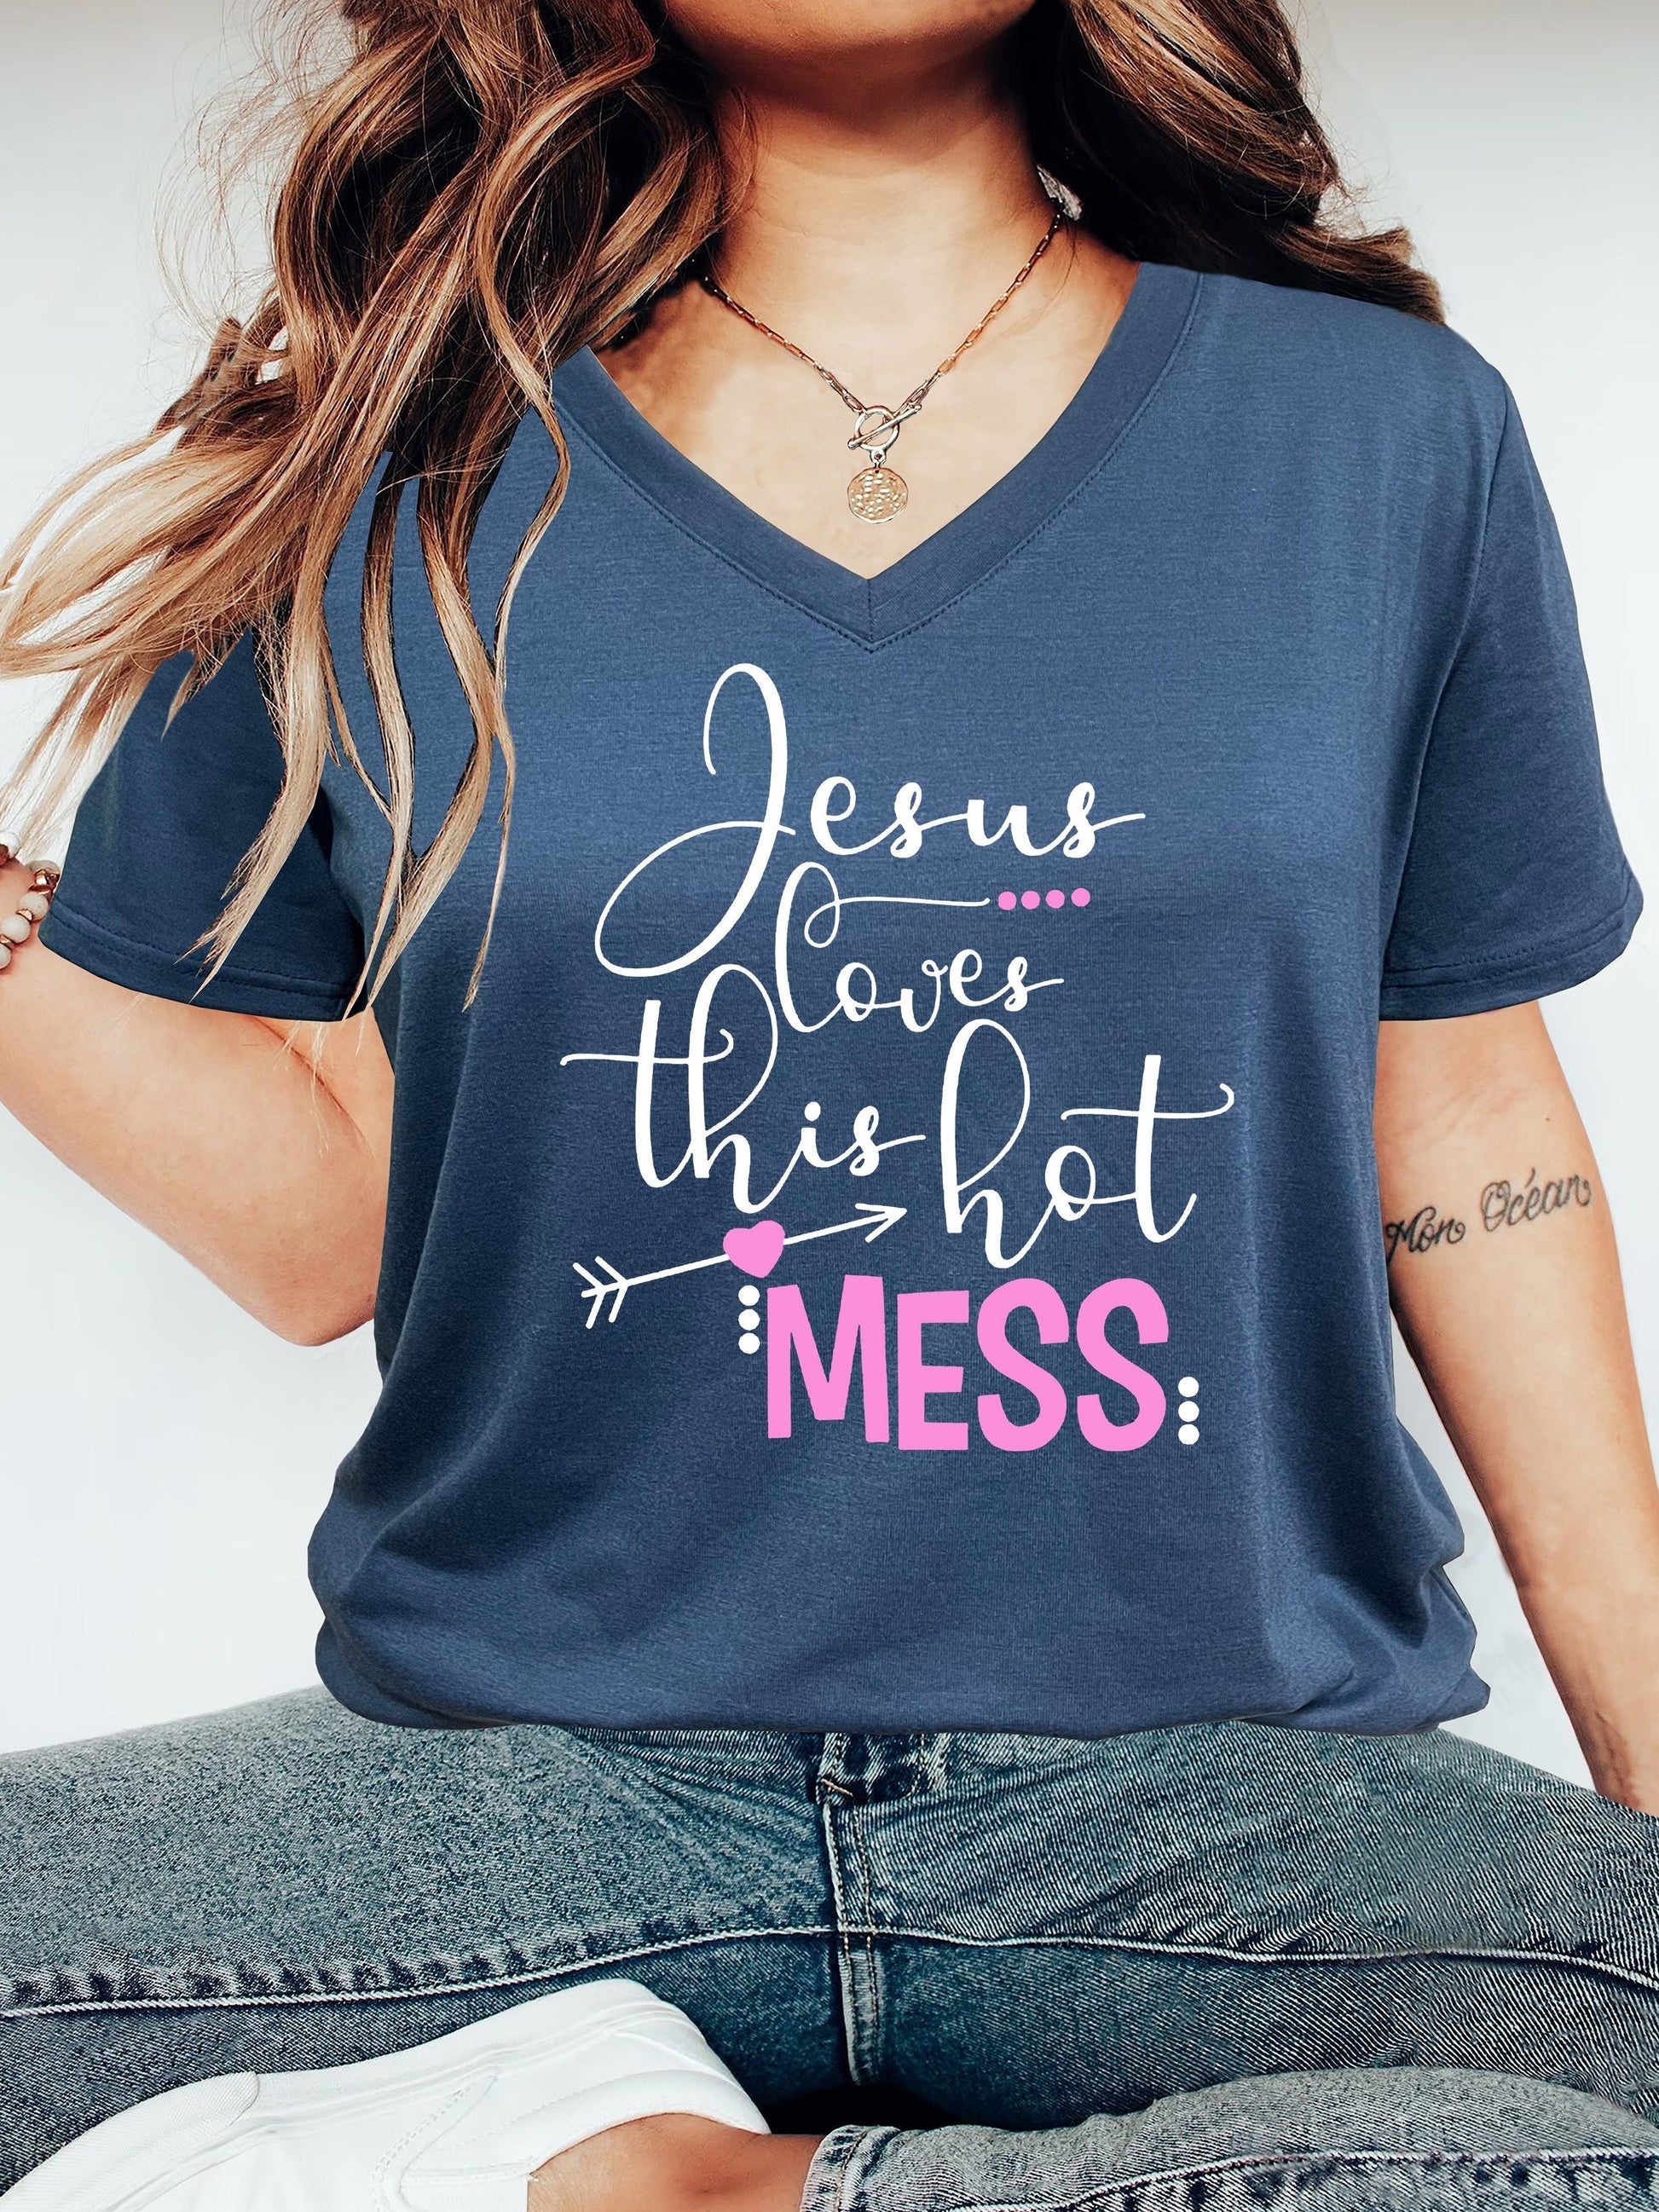 Jesus Loves This Hot Mess Women's Christian V Neck T-Shirt claimedbygoddesigns